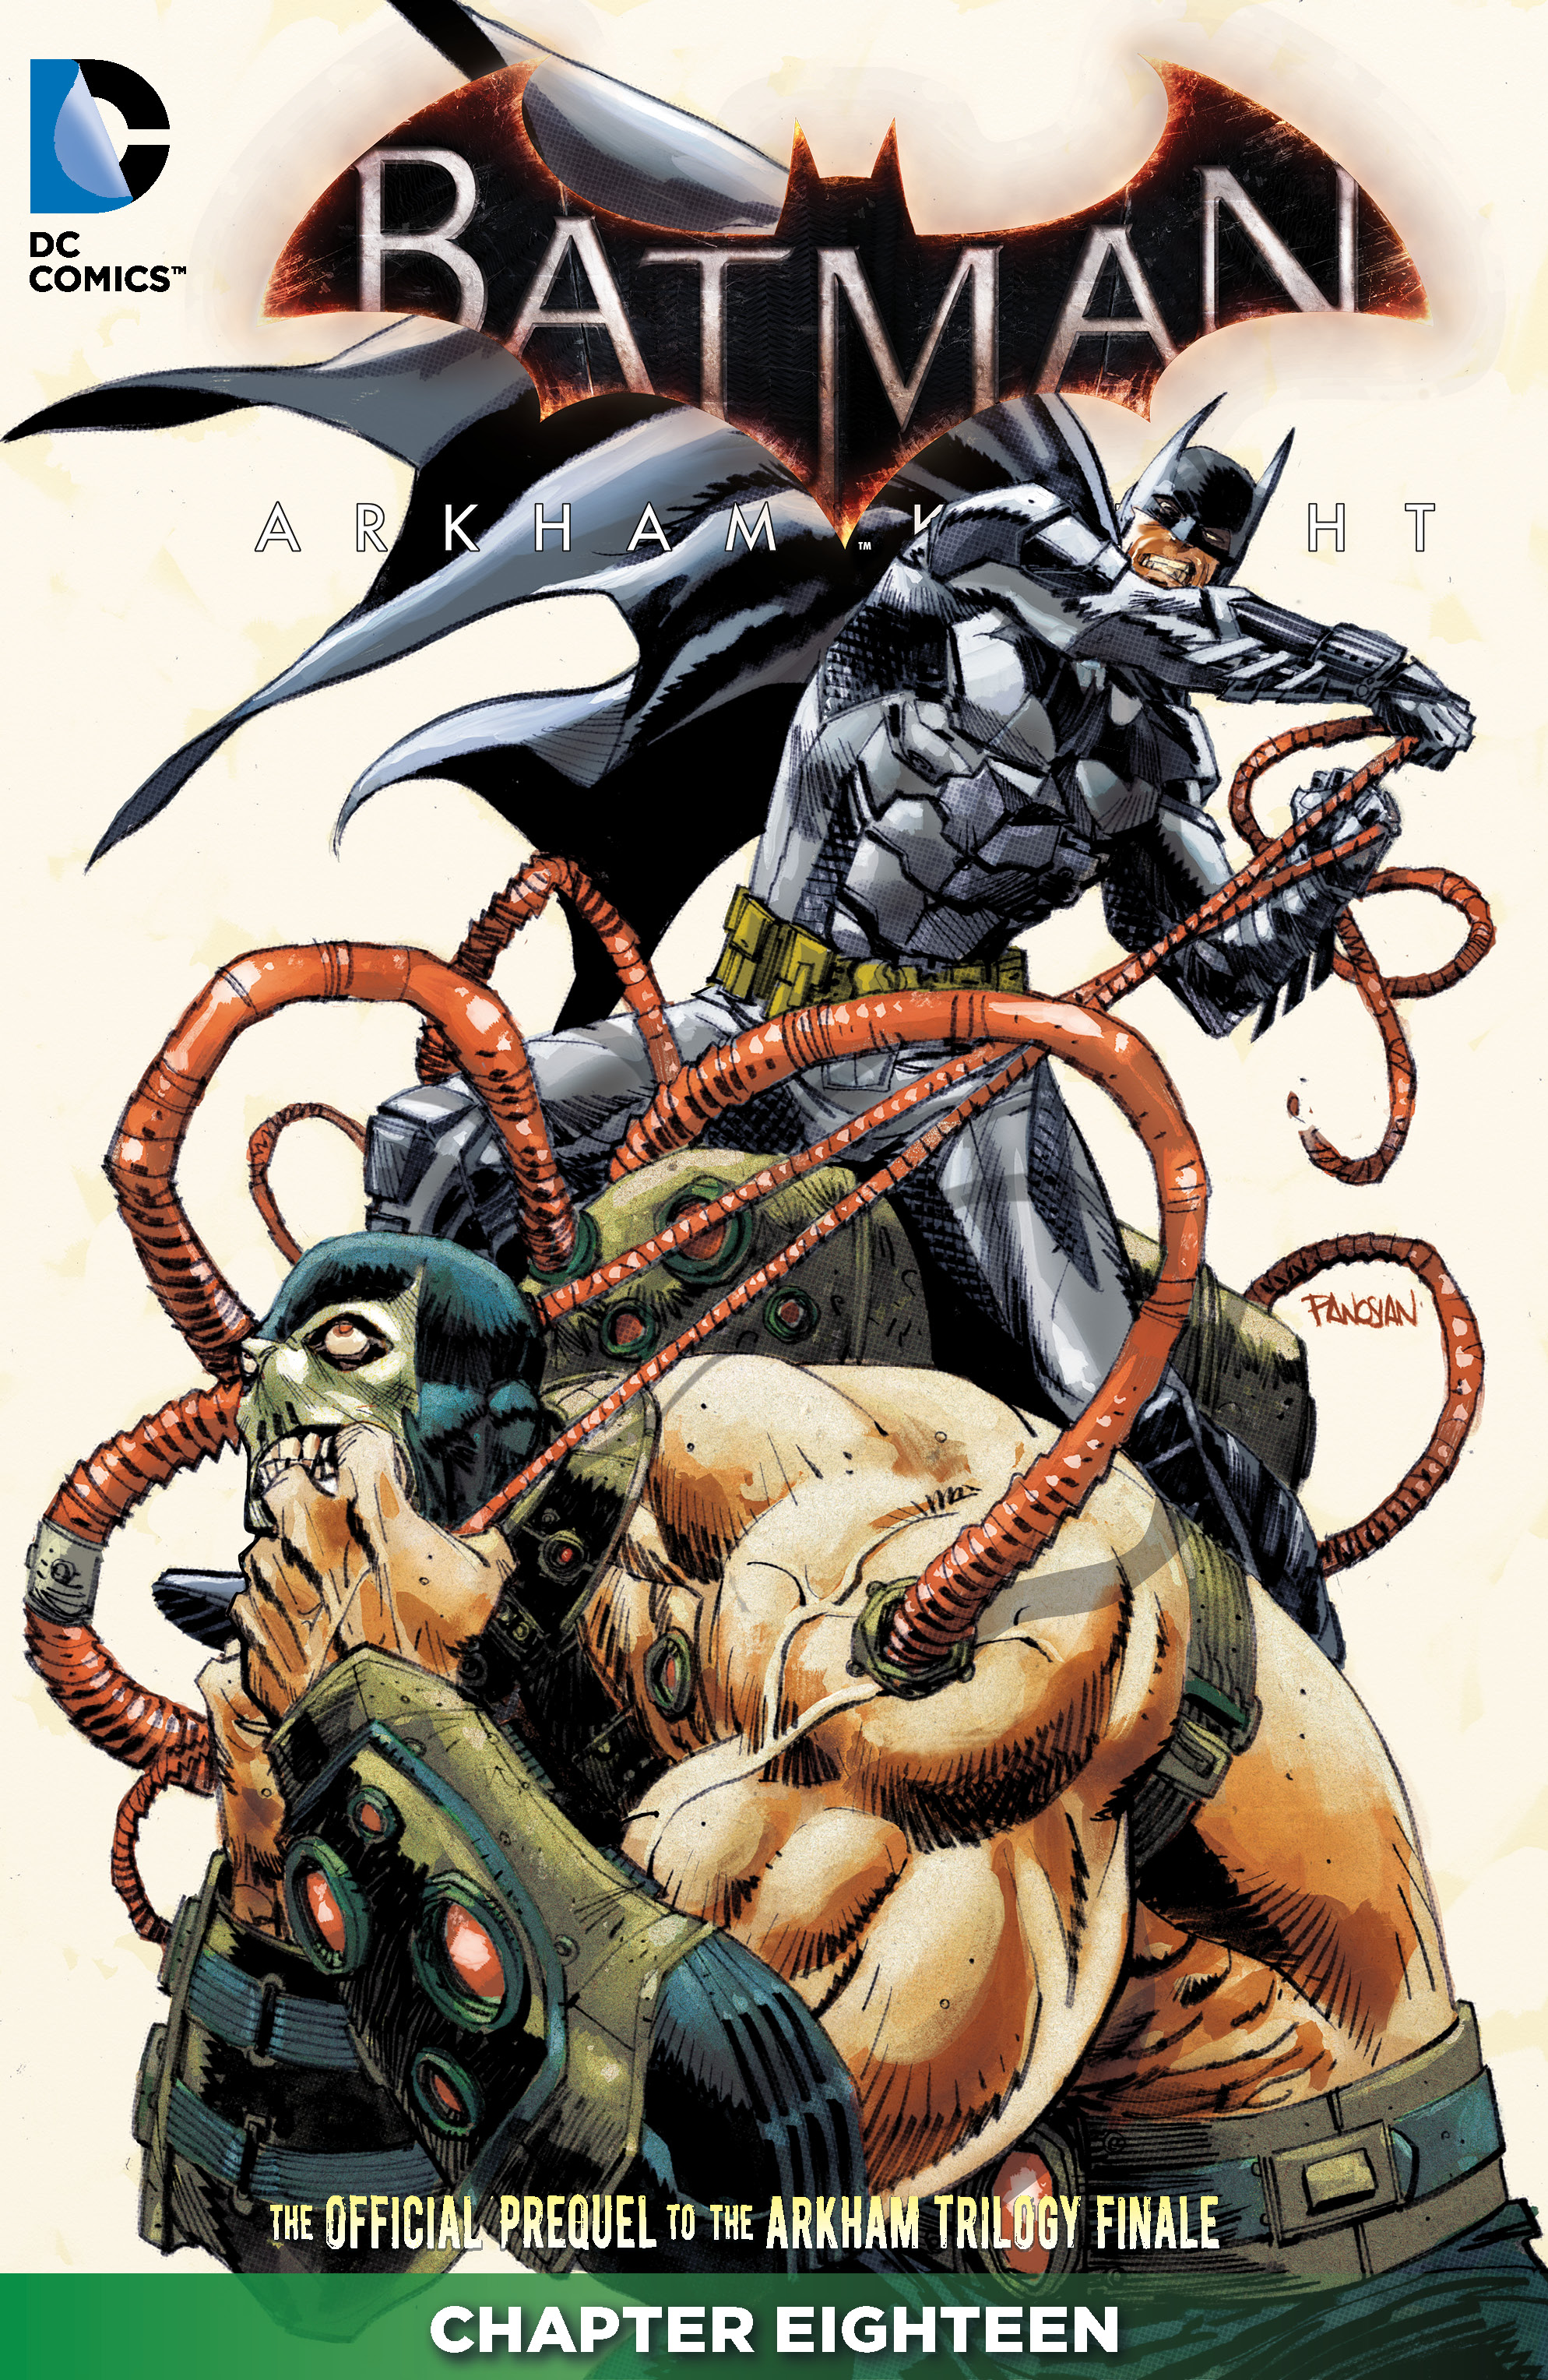 Batman: Arkham Knight #18 preview images